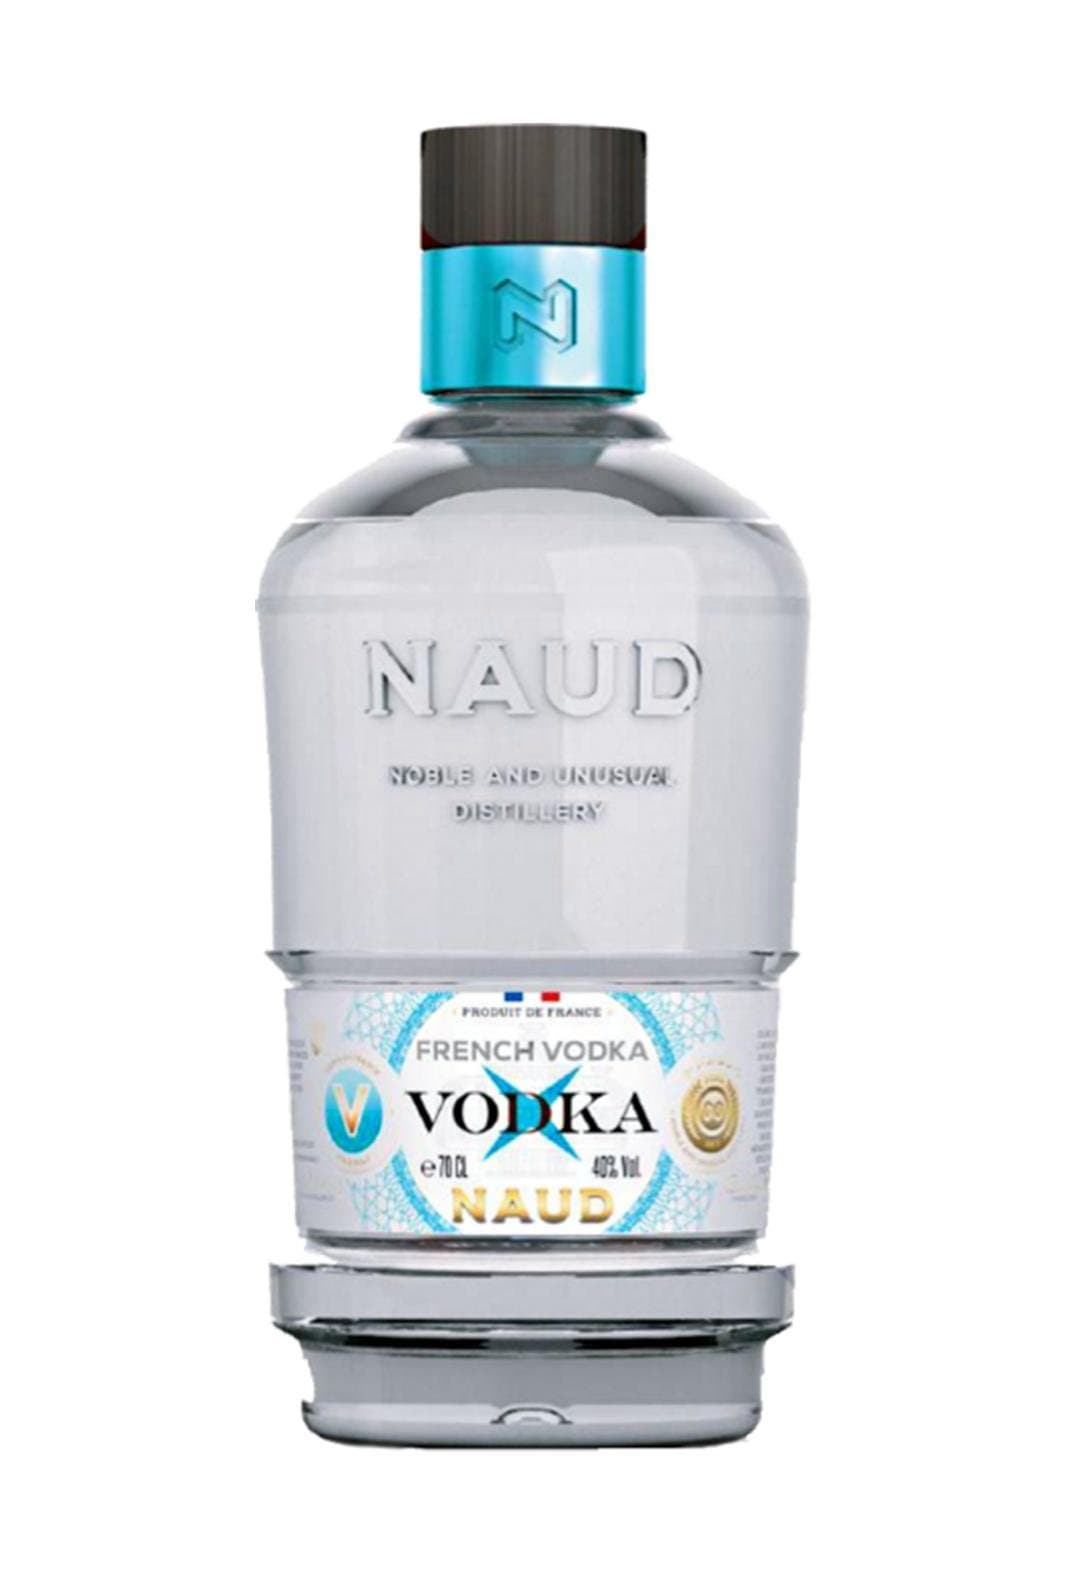 Naud French Vodka 40% 700ml | Vodka | Shop online at Spirits of France